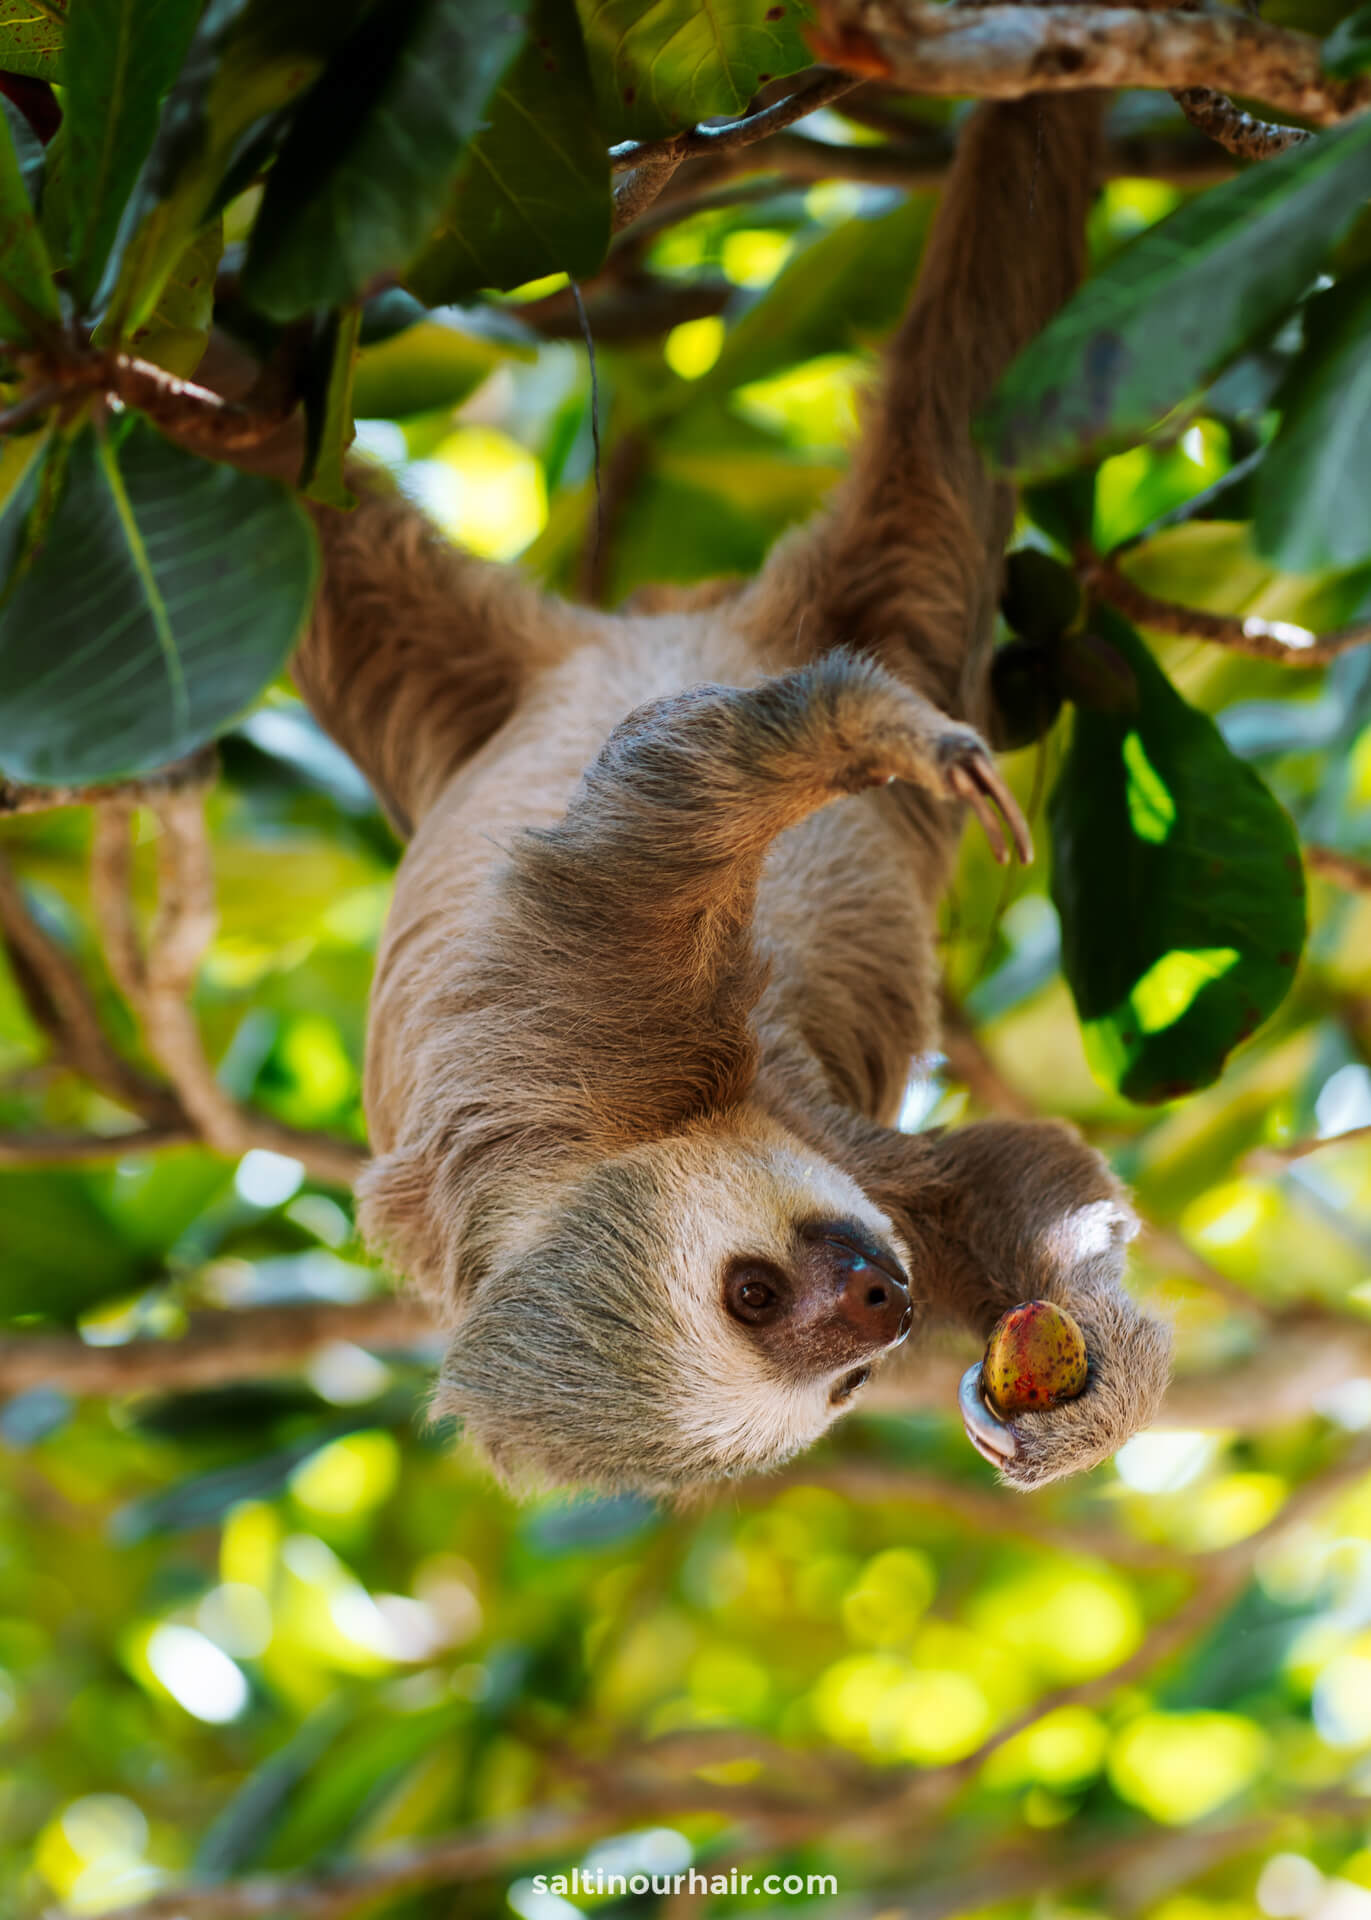 sloth costa rica